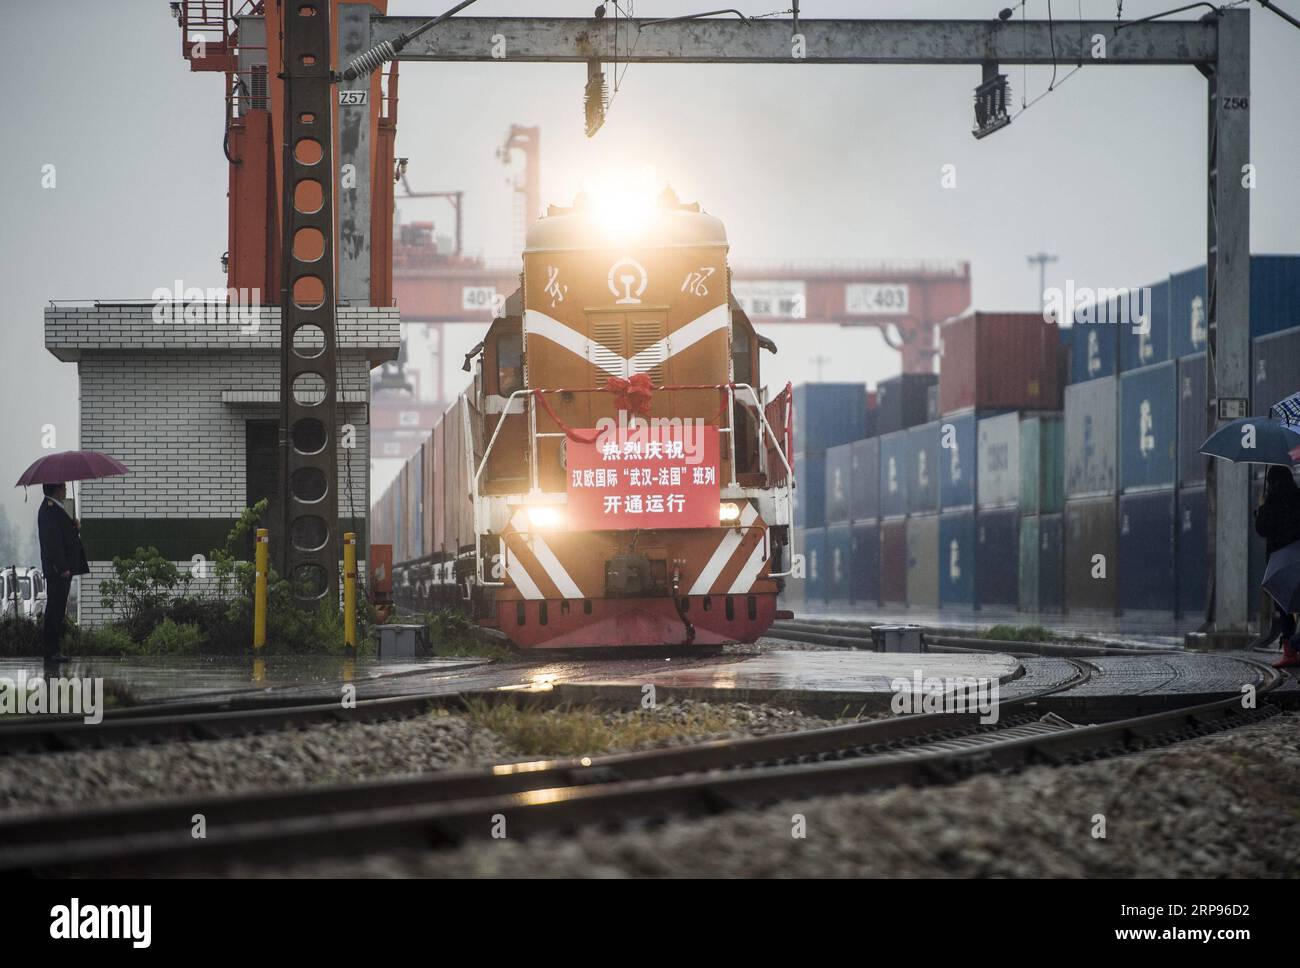 (190326) -- PEKING, 26. März 2019 (Xinhua) -- Ein Güterzug nach Lyon von Frankreich fährt vom Wujiashan Railway Center in Wuhan, der zentralchinesischen Provinz Hubei, am 6. April 2016 ab. (Xinhua/Xiao Yijiu) Xinhua Schlagzeilen: Fünf Jahre später, Xis Vision der Zivilisation enthüllender in einer unsicheren Welt PUBLICATIONxNOTxINxCHN Stockfoto